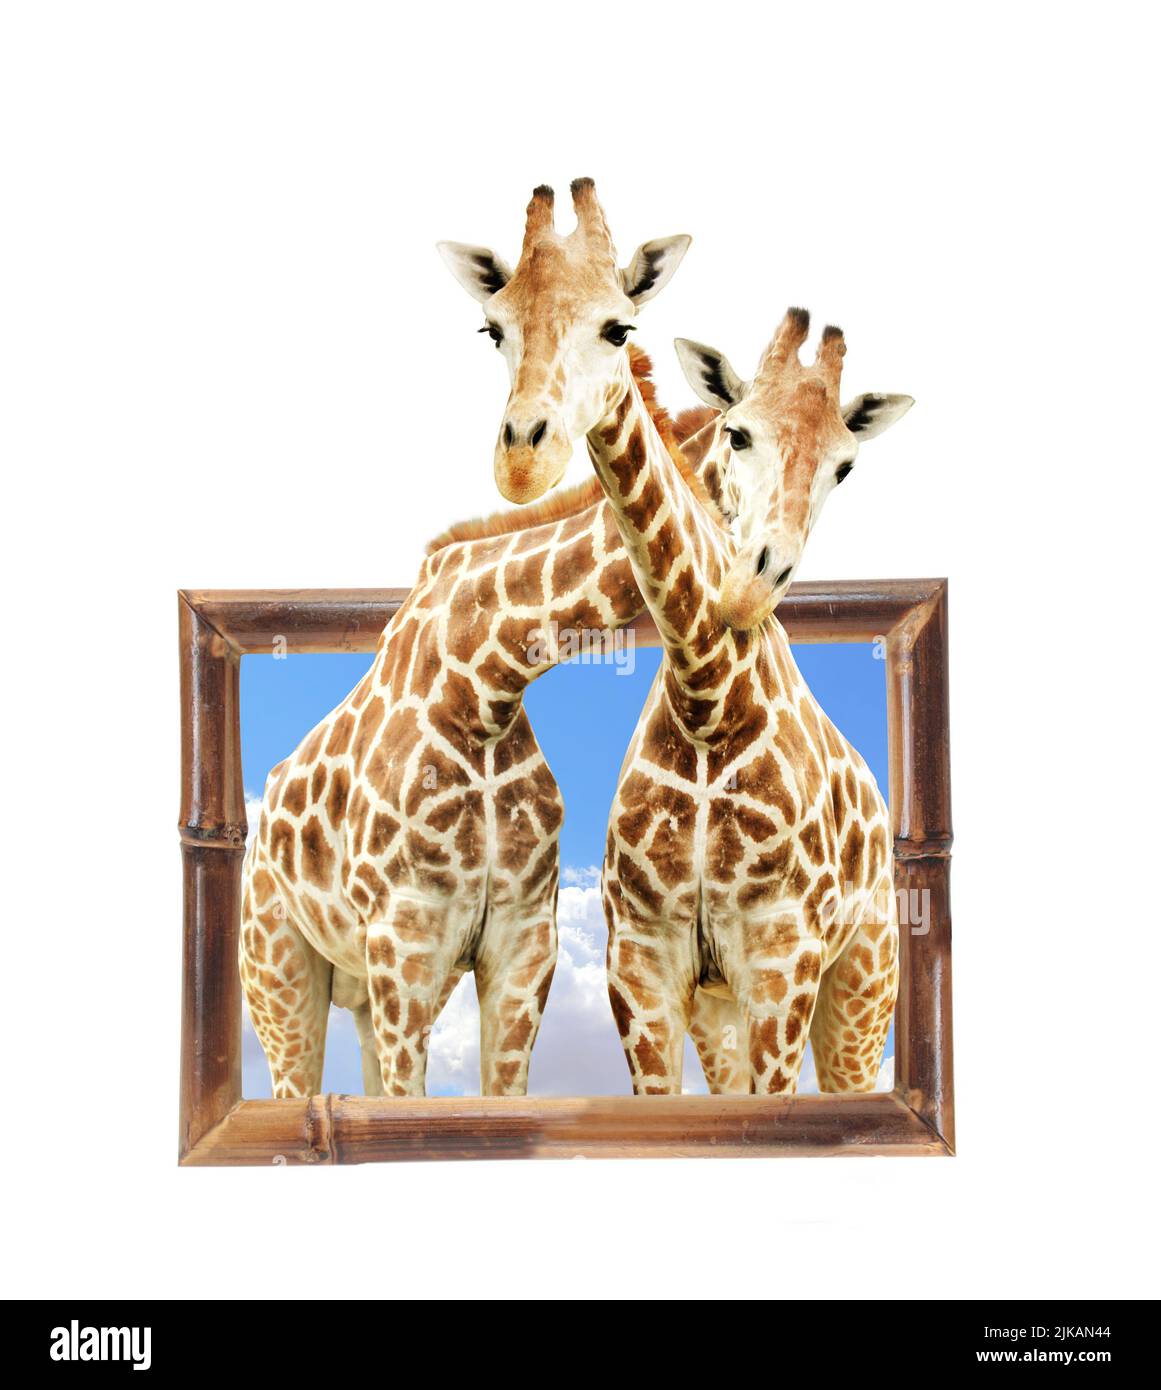 Deux girafes en bois avec effet 3D. Isolé sur fond blanc Banque D'Images